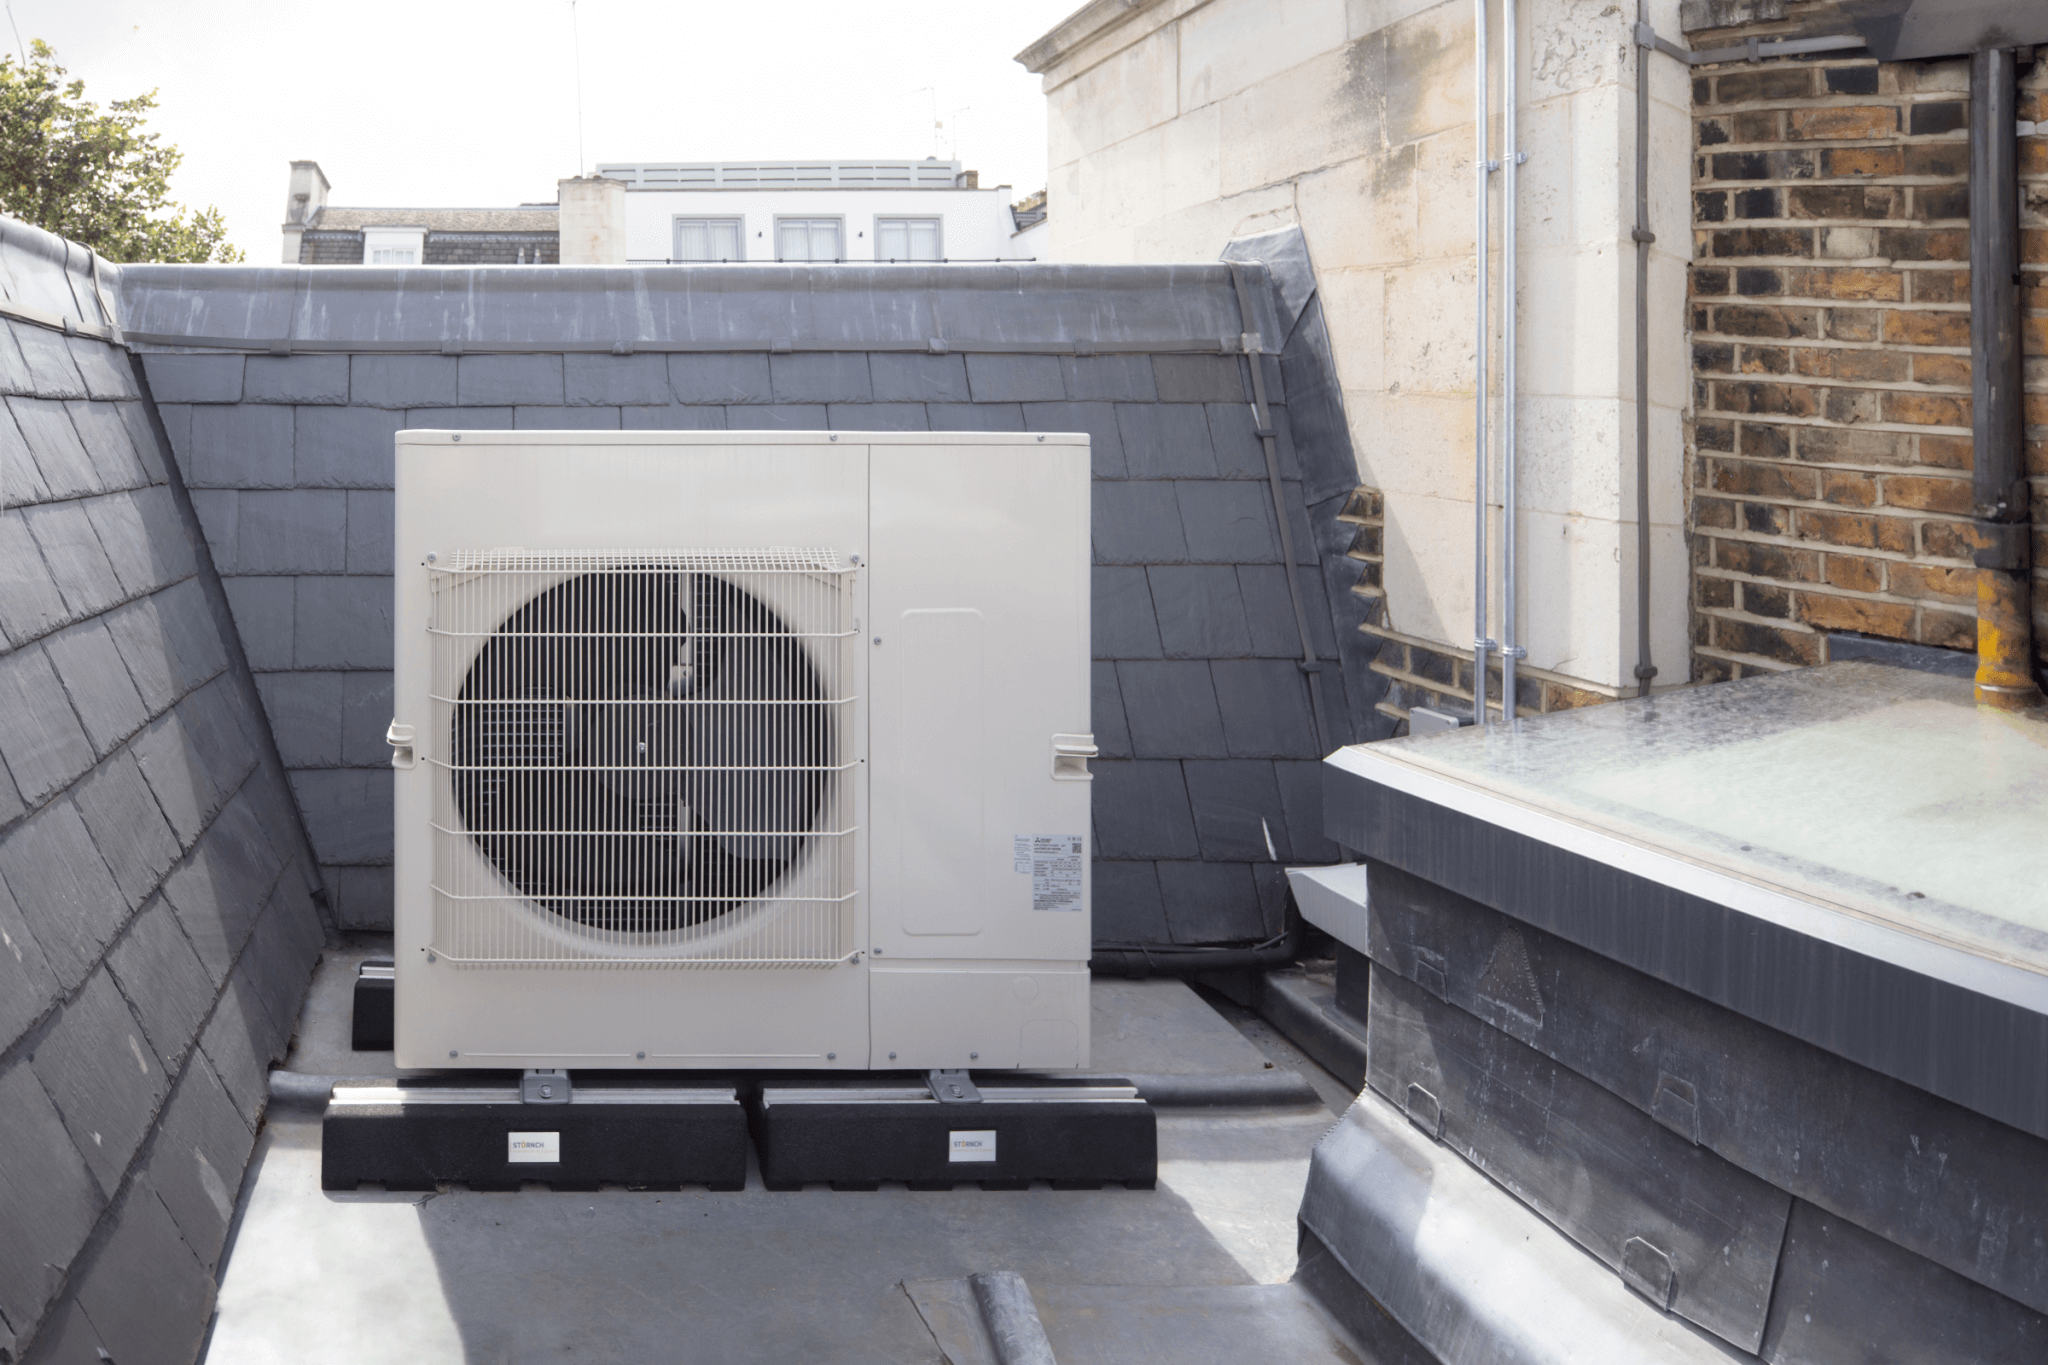 External air conditioning condenser unit hidden in roof recess